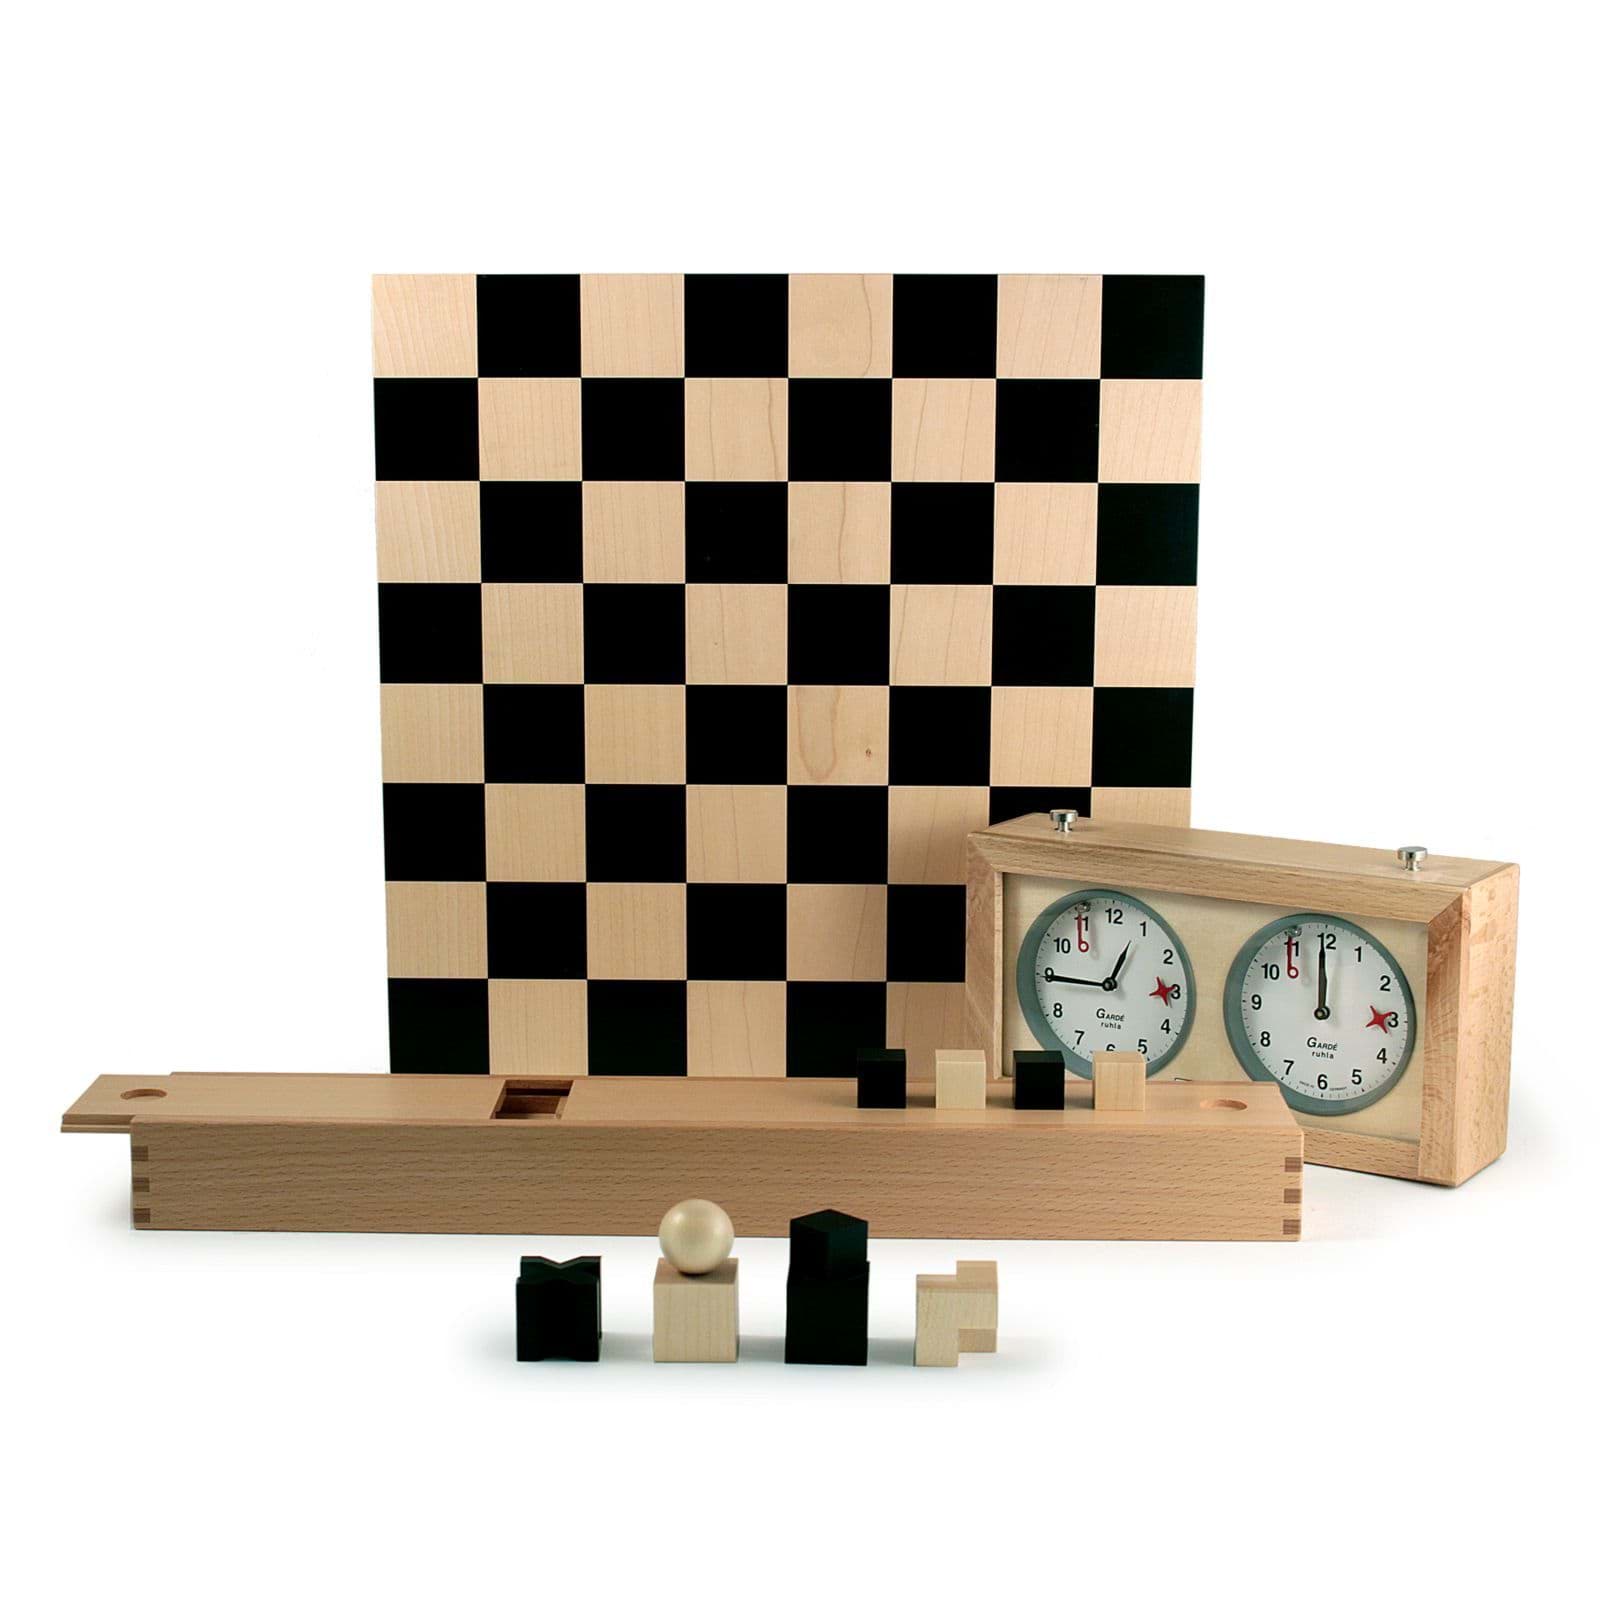 Imagen de Ajedrez Bauhaus por Josef Hartwig + Reloj de Ajedrez